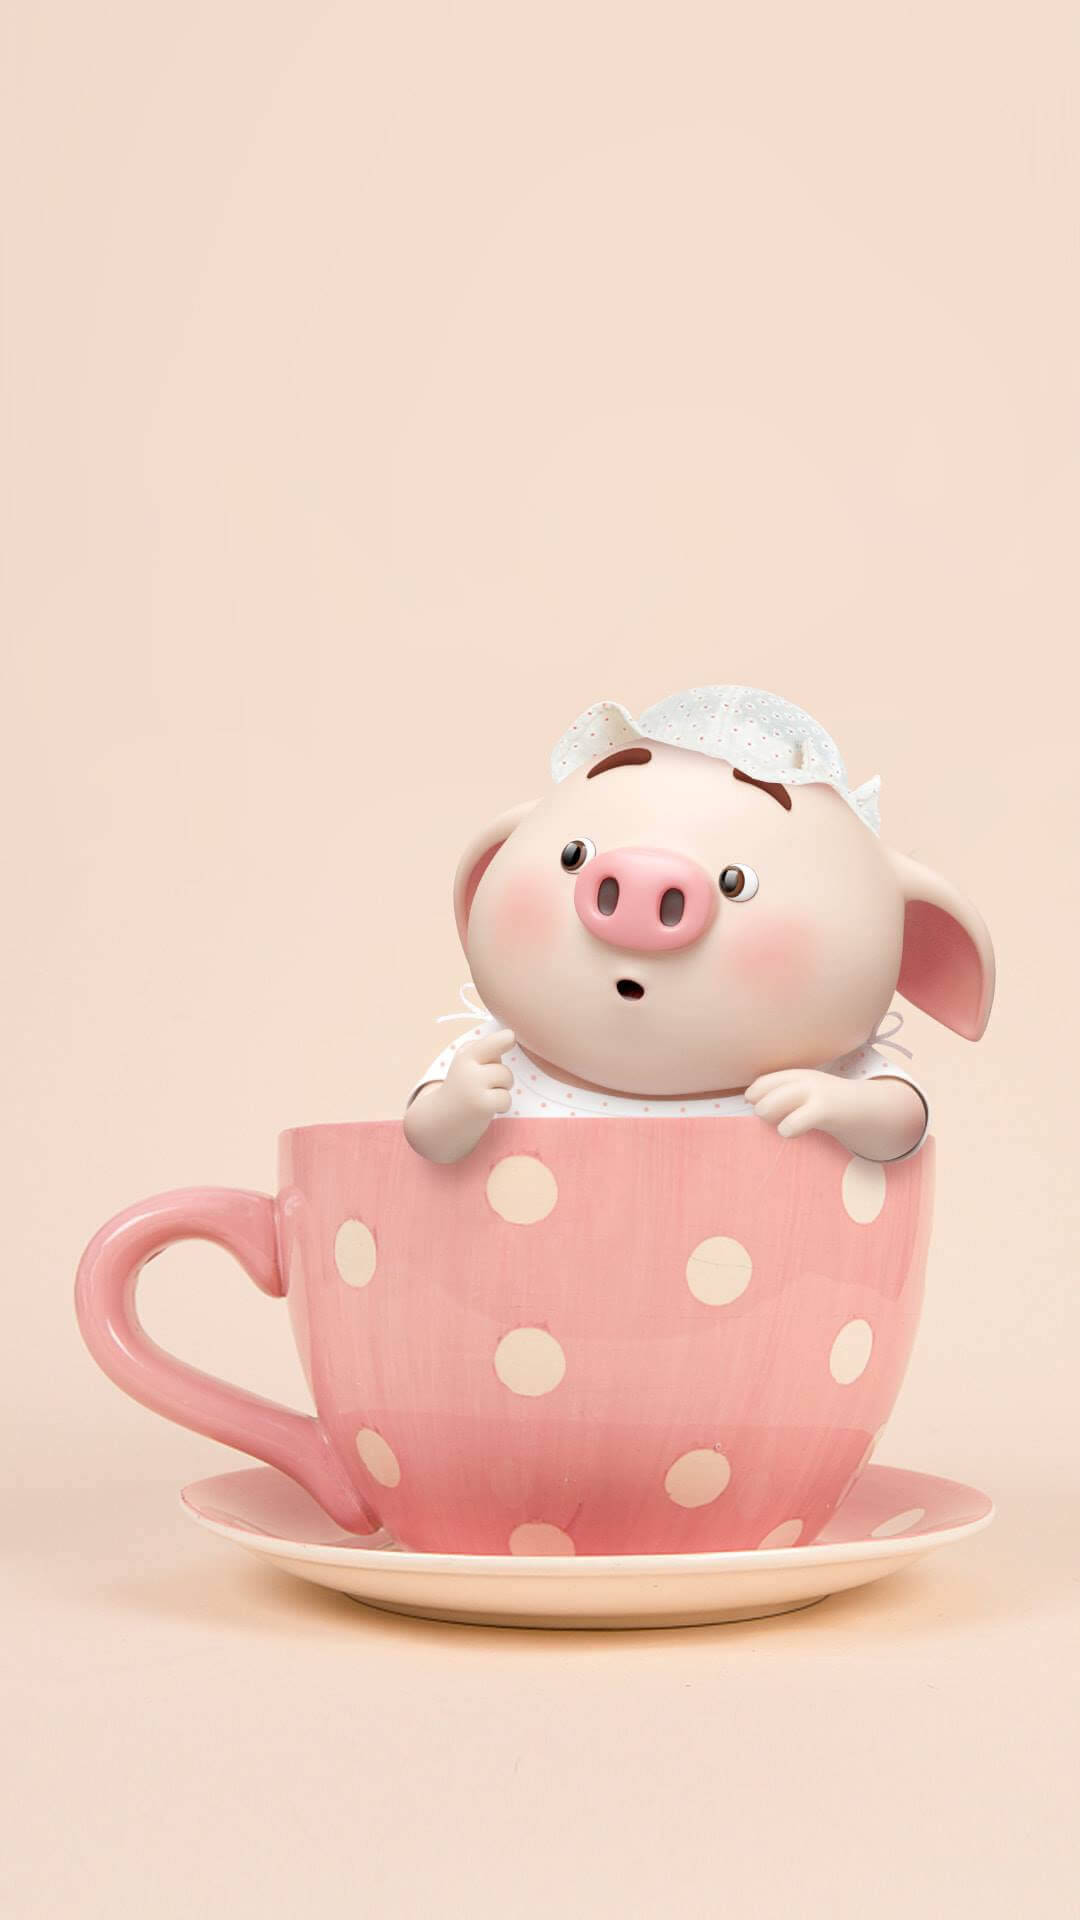 Mr Piggy In A Teacup Background